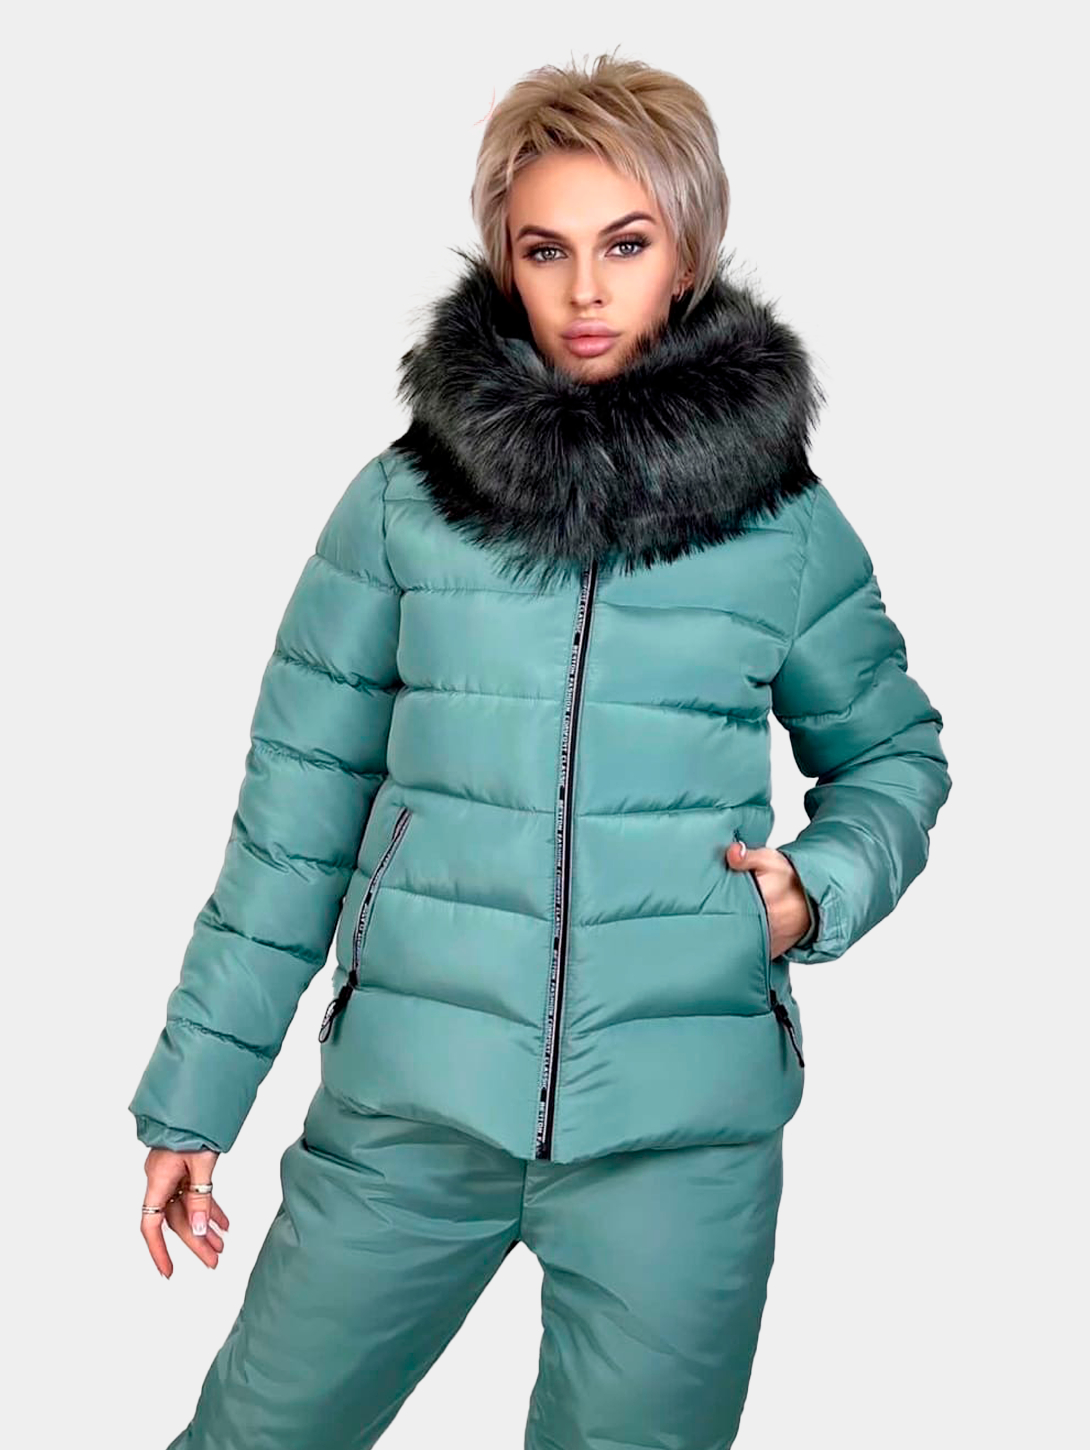 Женский зимний костюм купить по цене 3900 ₽ в интернет-магазине KazanExpress